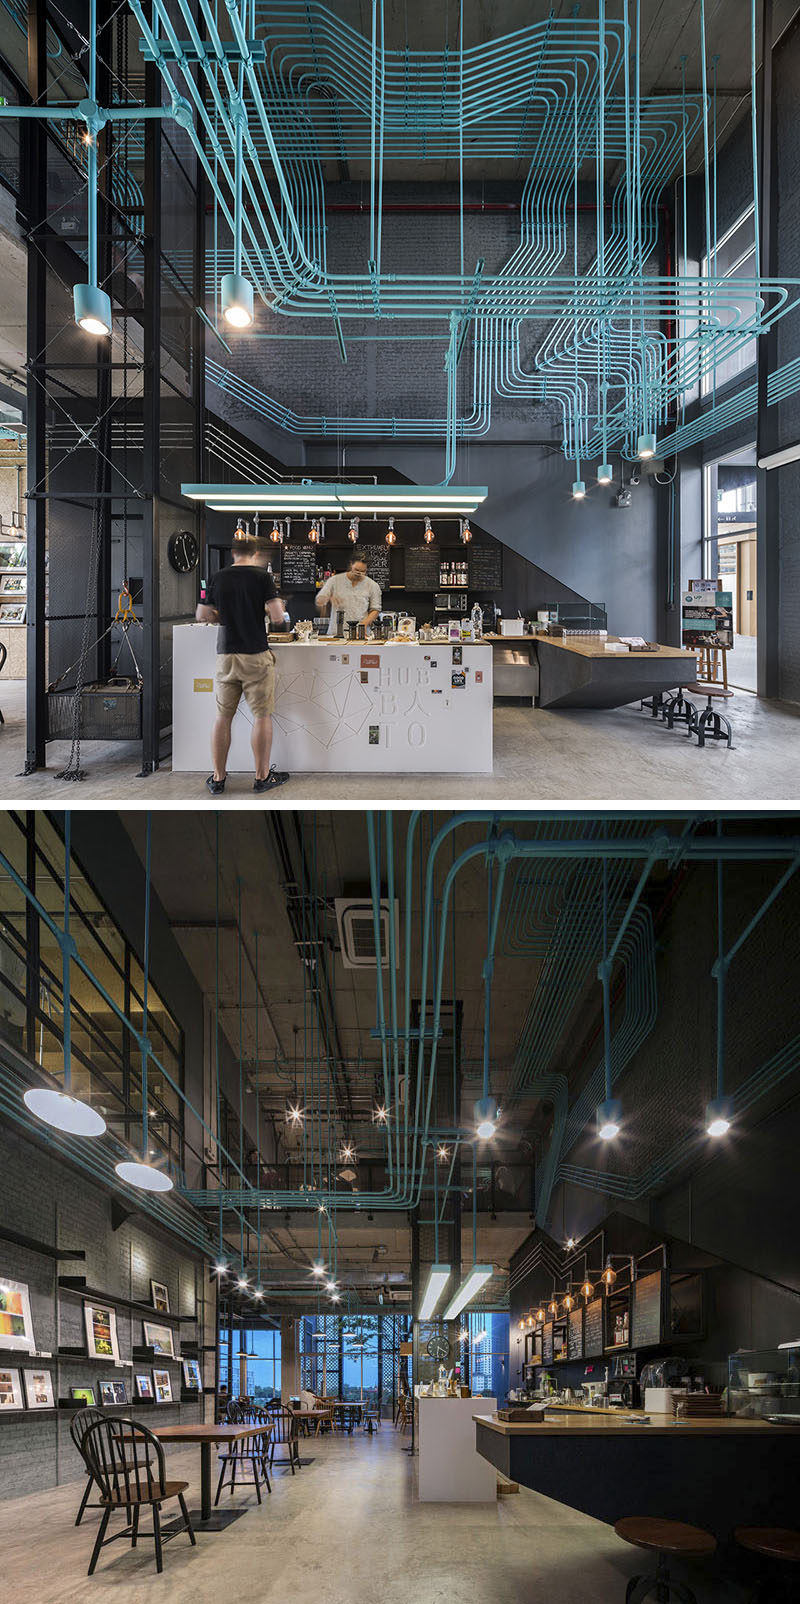 10 уникальных кофеен в Азии / Supermachine Studio и разработчик Сансири спроектировали эту офисную кофейню, которая подчеркивает систему электропроводки, покрасив ее в ярко-бирюзовый цвет, чтобы придать ей забавный индустриальный вид.